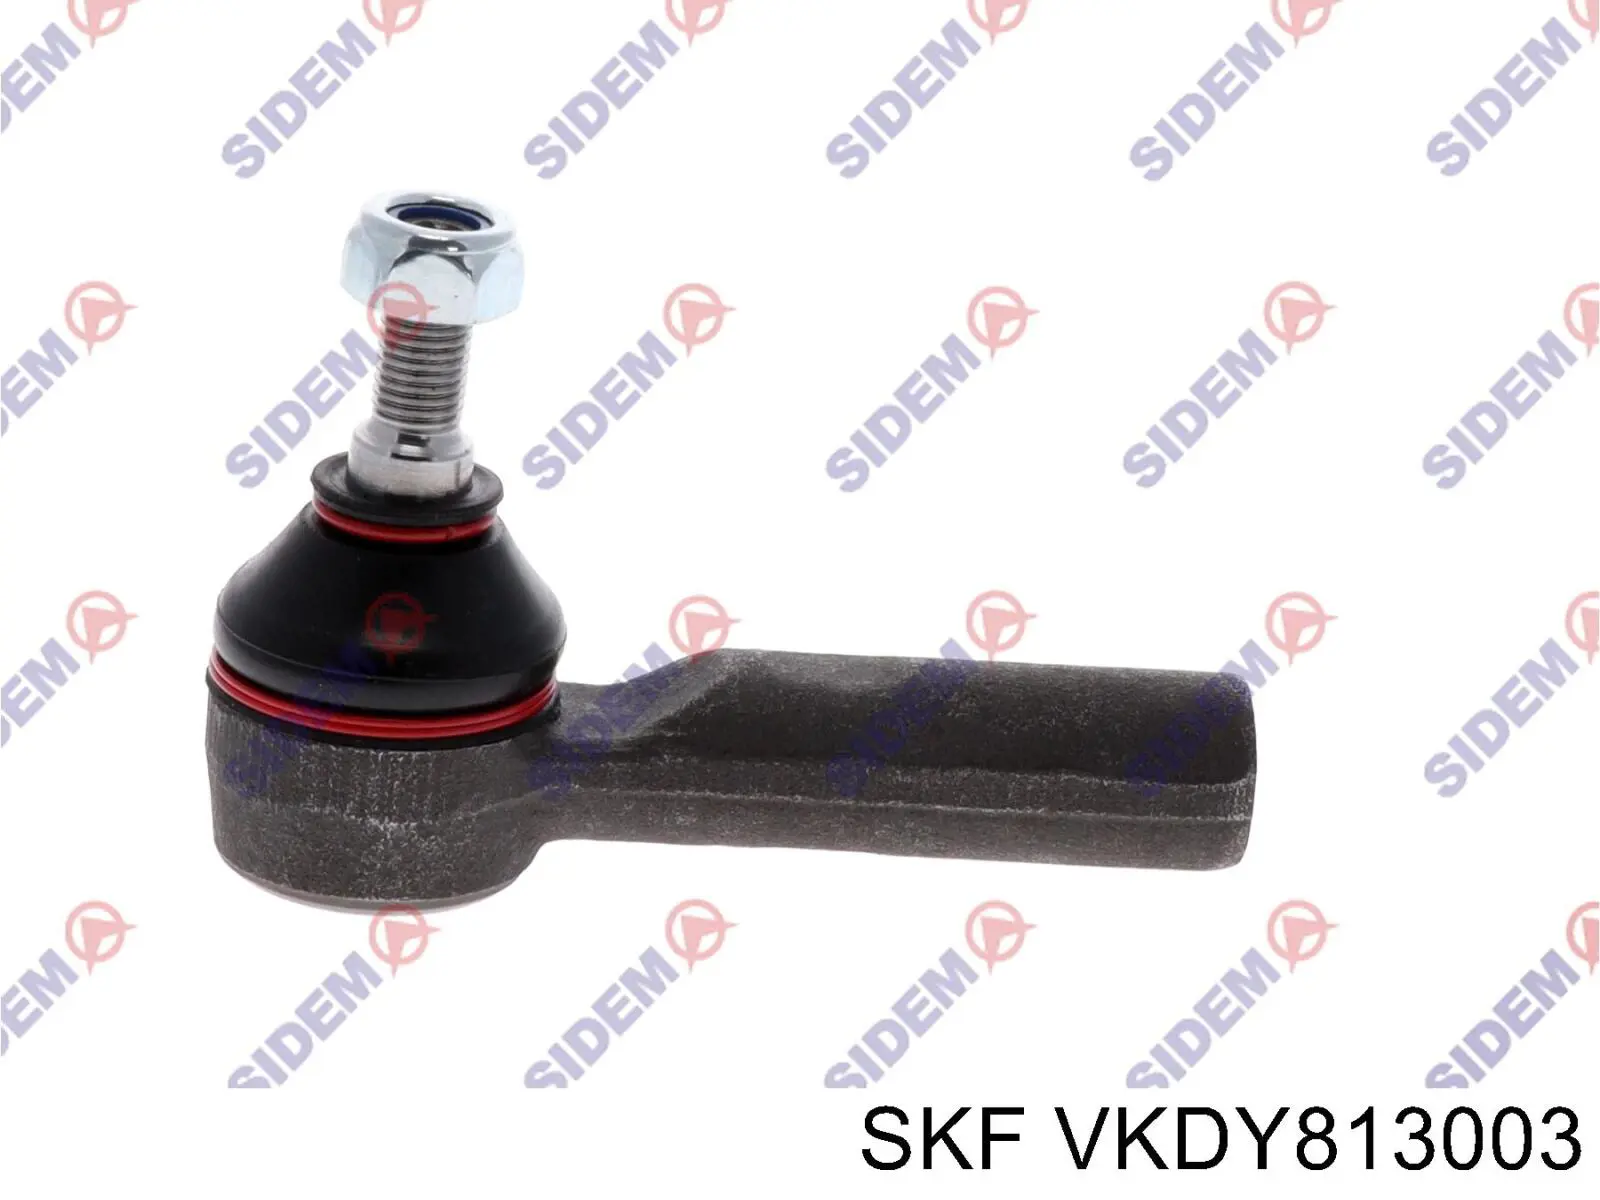 VKDY813003 SKF rótula barra de acoplamiento exterior